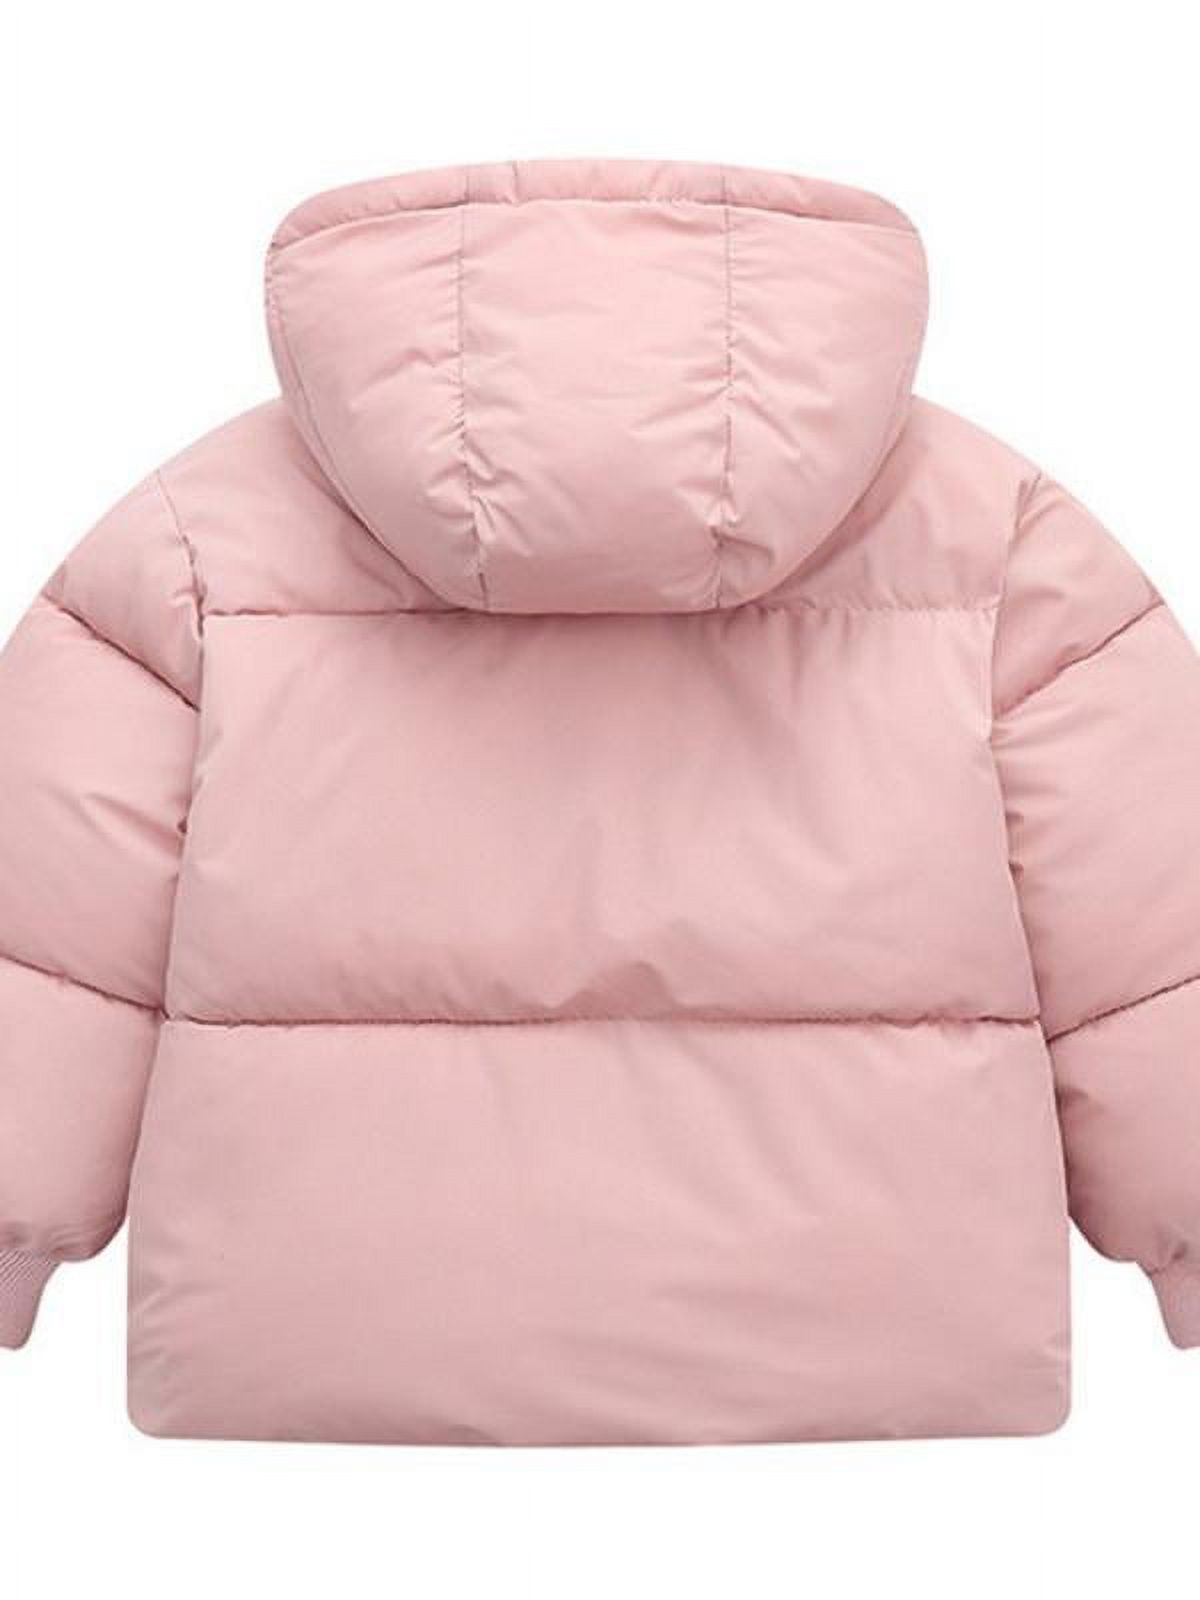 Topumt Boys Girls Hooded Down Jacket Winter Warm Fleece Coat Windproof Zipper Puffer Outerwear 1T-6T - image 2 of 7